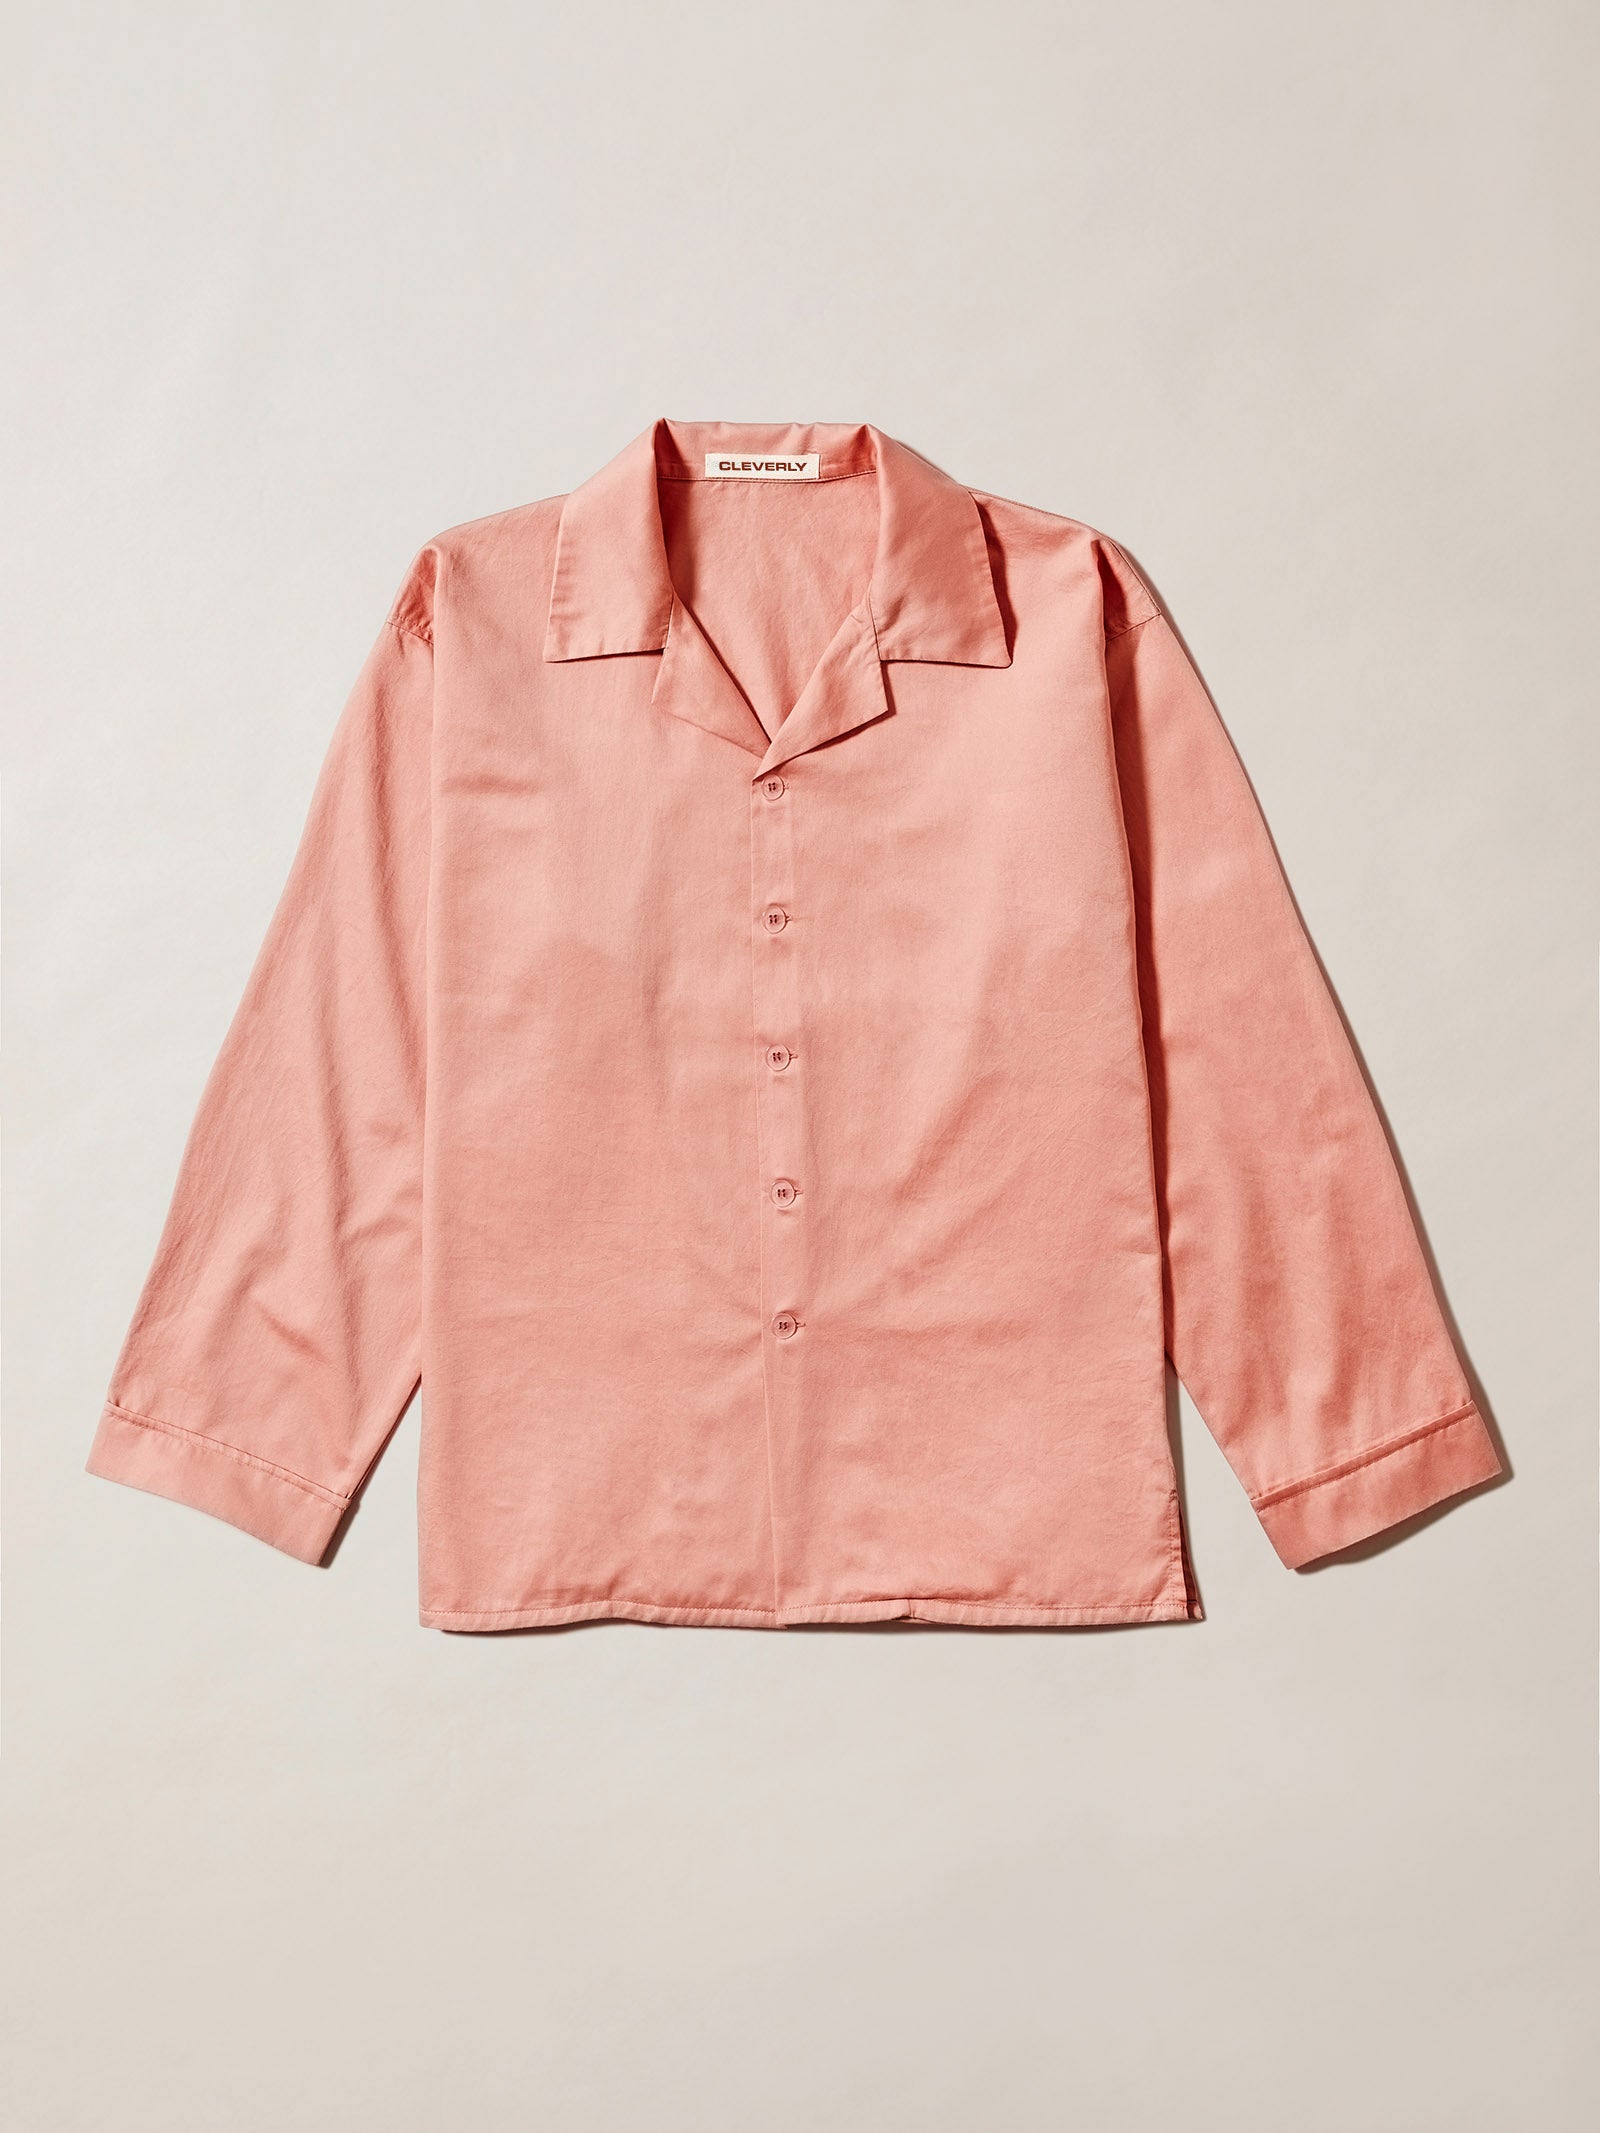 100% cotton pyjamas, soft long sleeve shirt, long sleeve pyjama shirt, pink lounge shirt